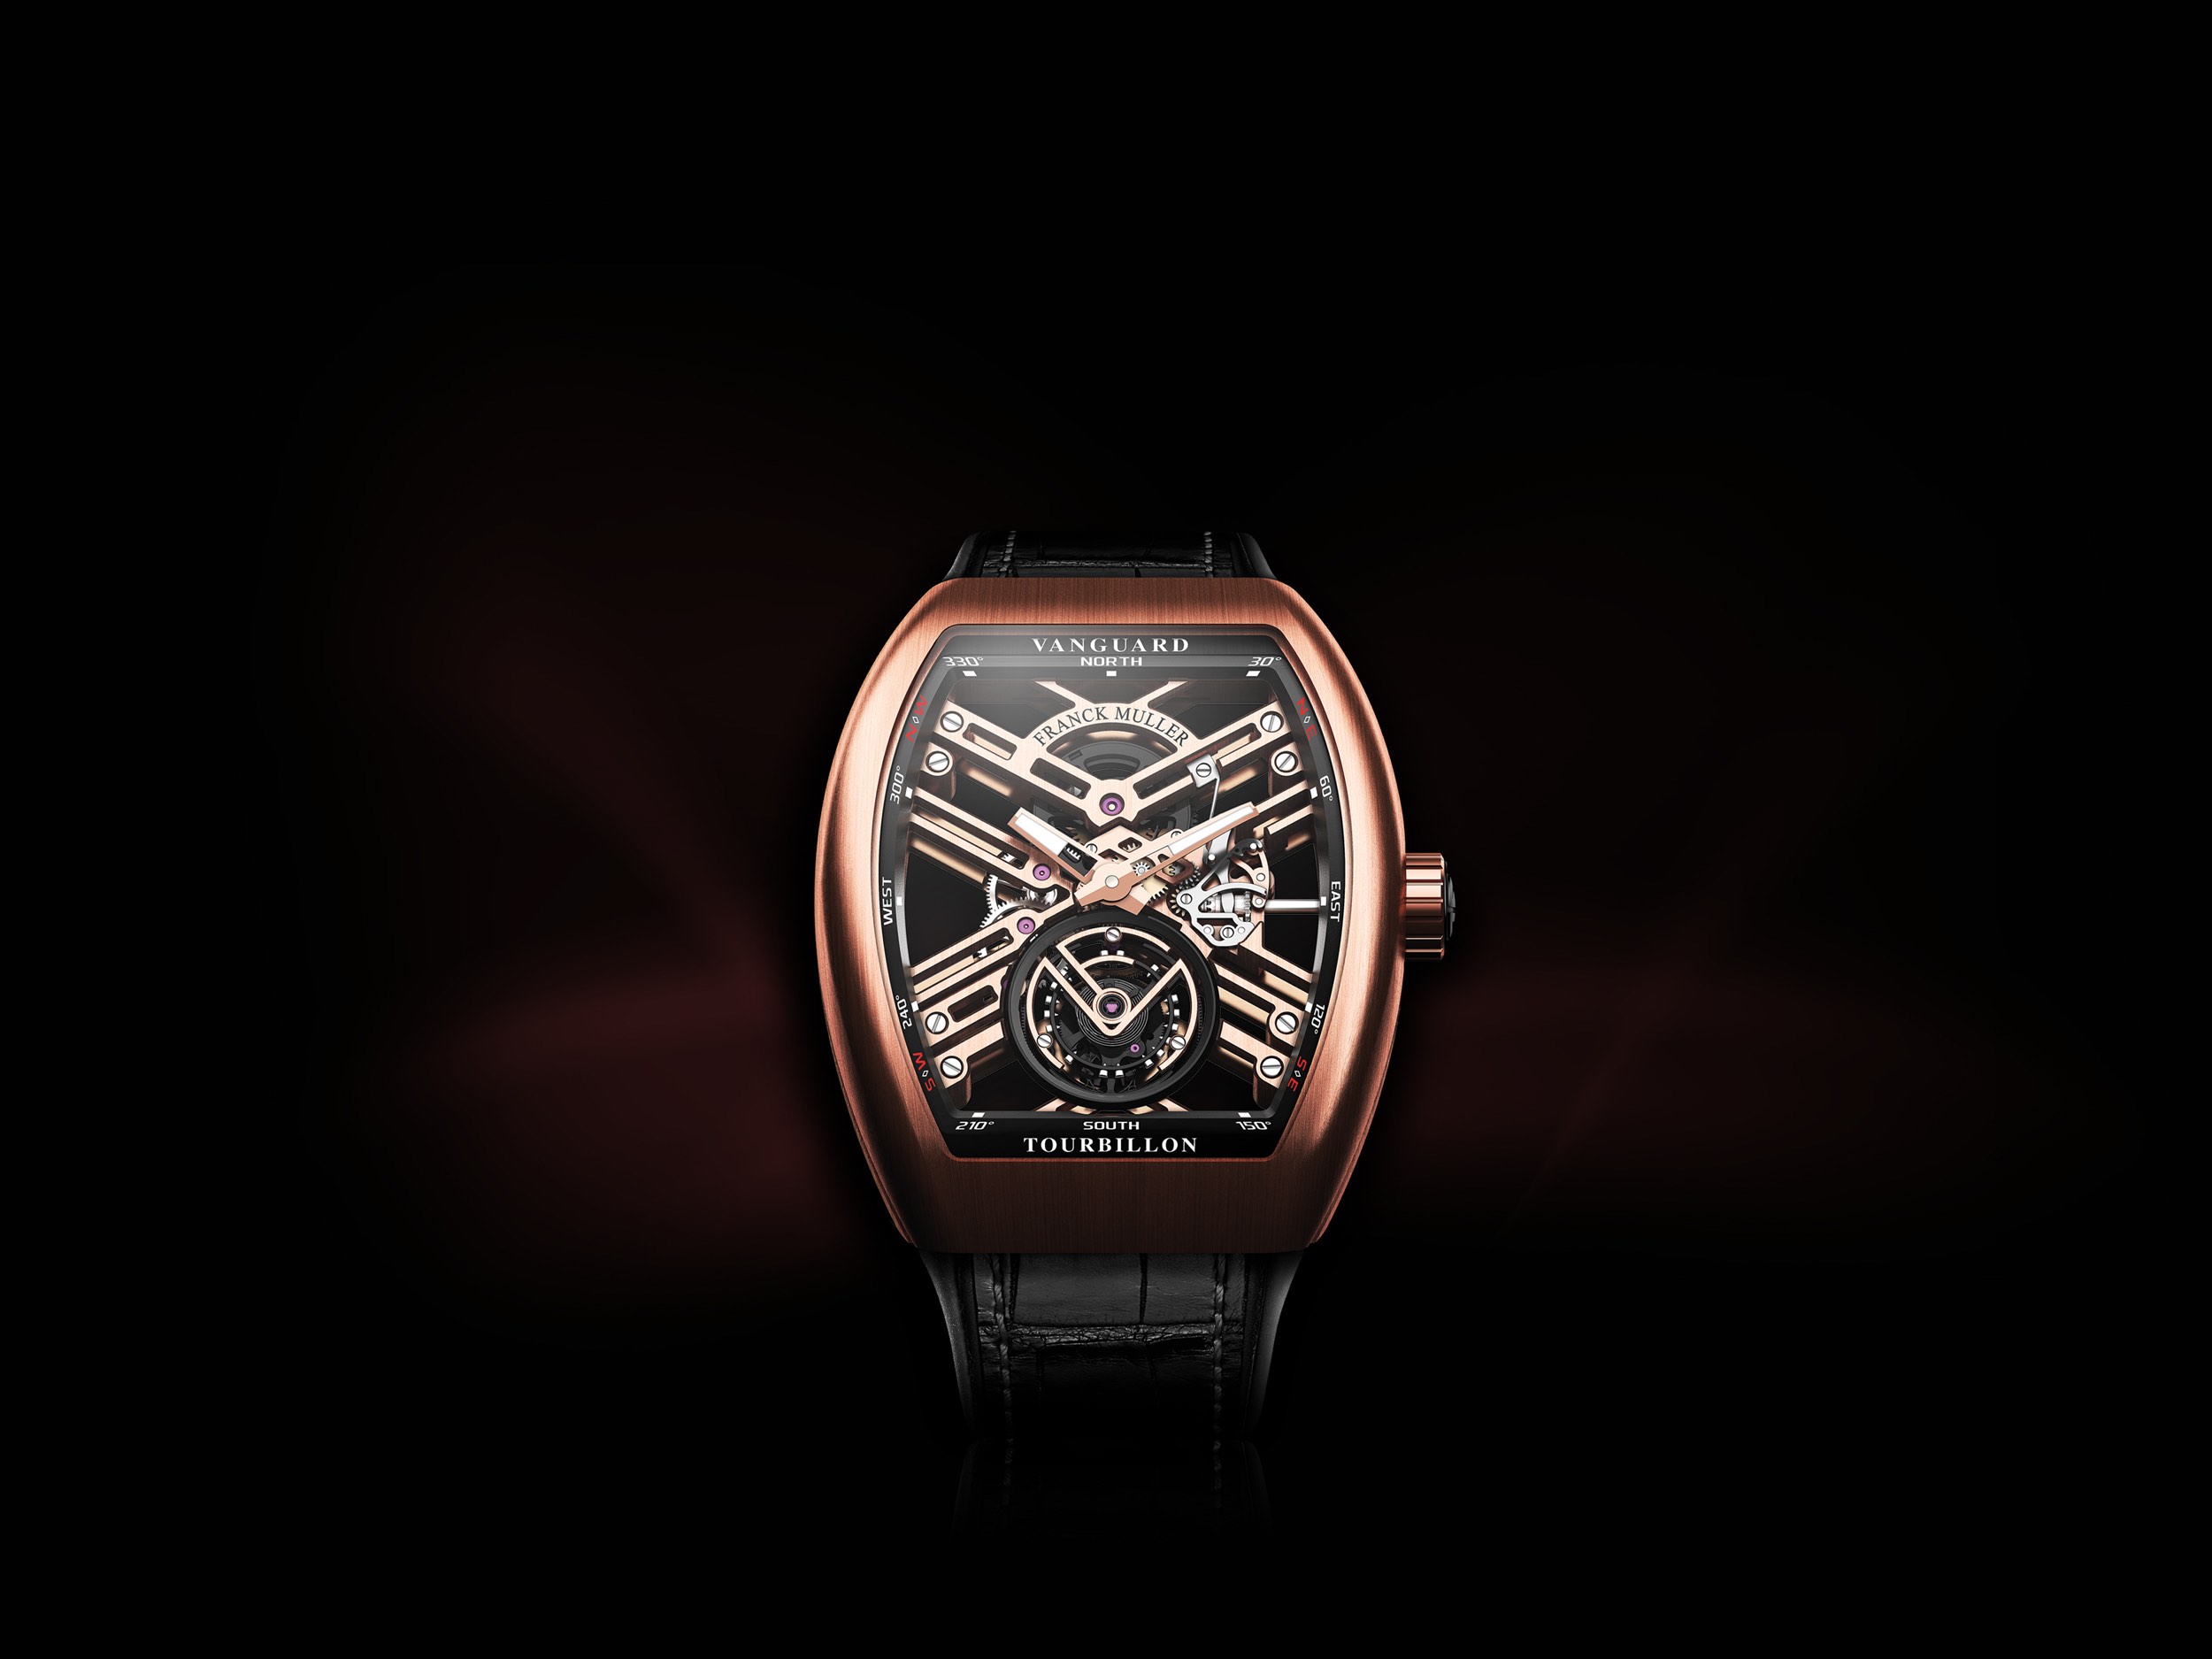 Franck Muller Franck Muller Vanguard V45SCDTACERNRERBK/CR Black Dial New Watch Men's Watch